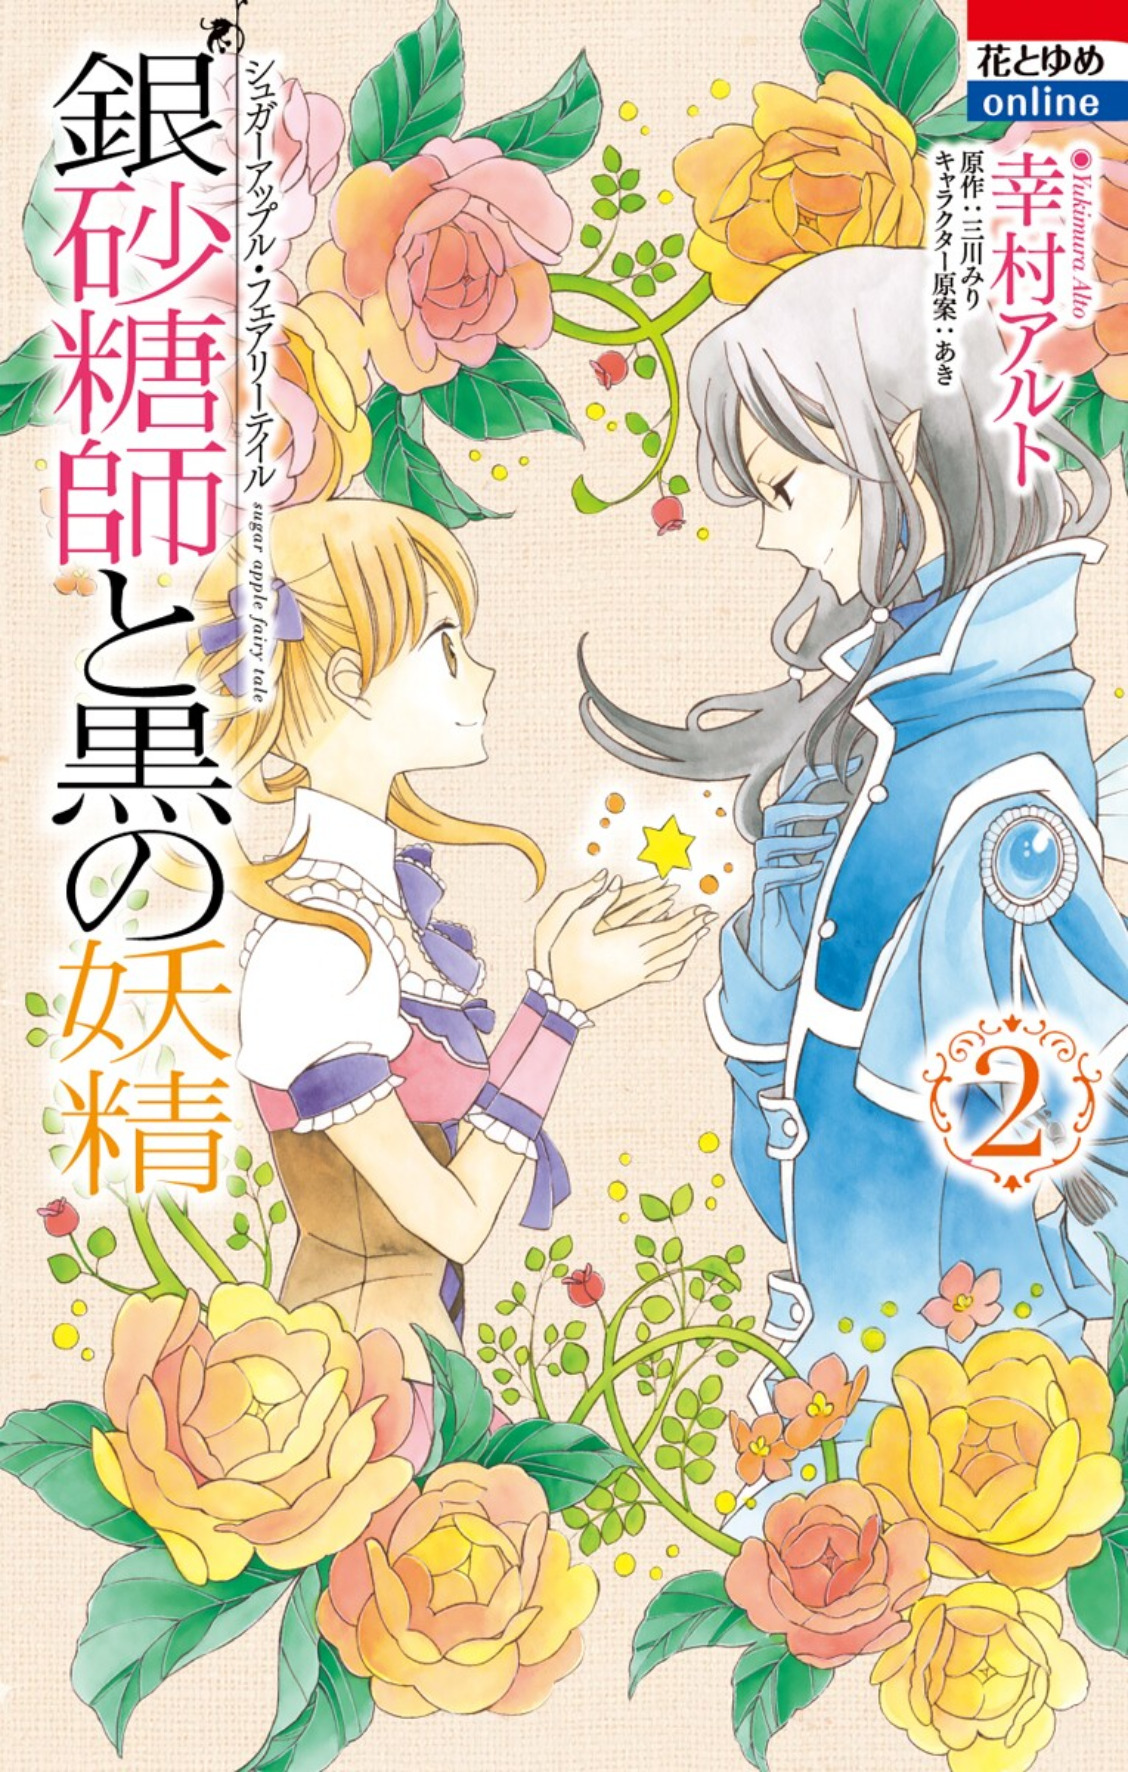 Sugar Apple Fairy Tale, Vol. 1 (manga) (Sugar Apple Fairy Tale